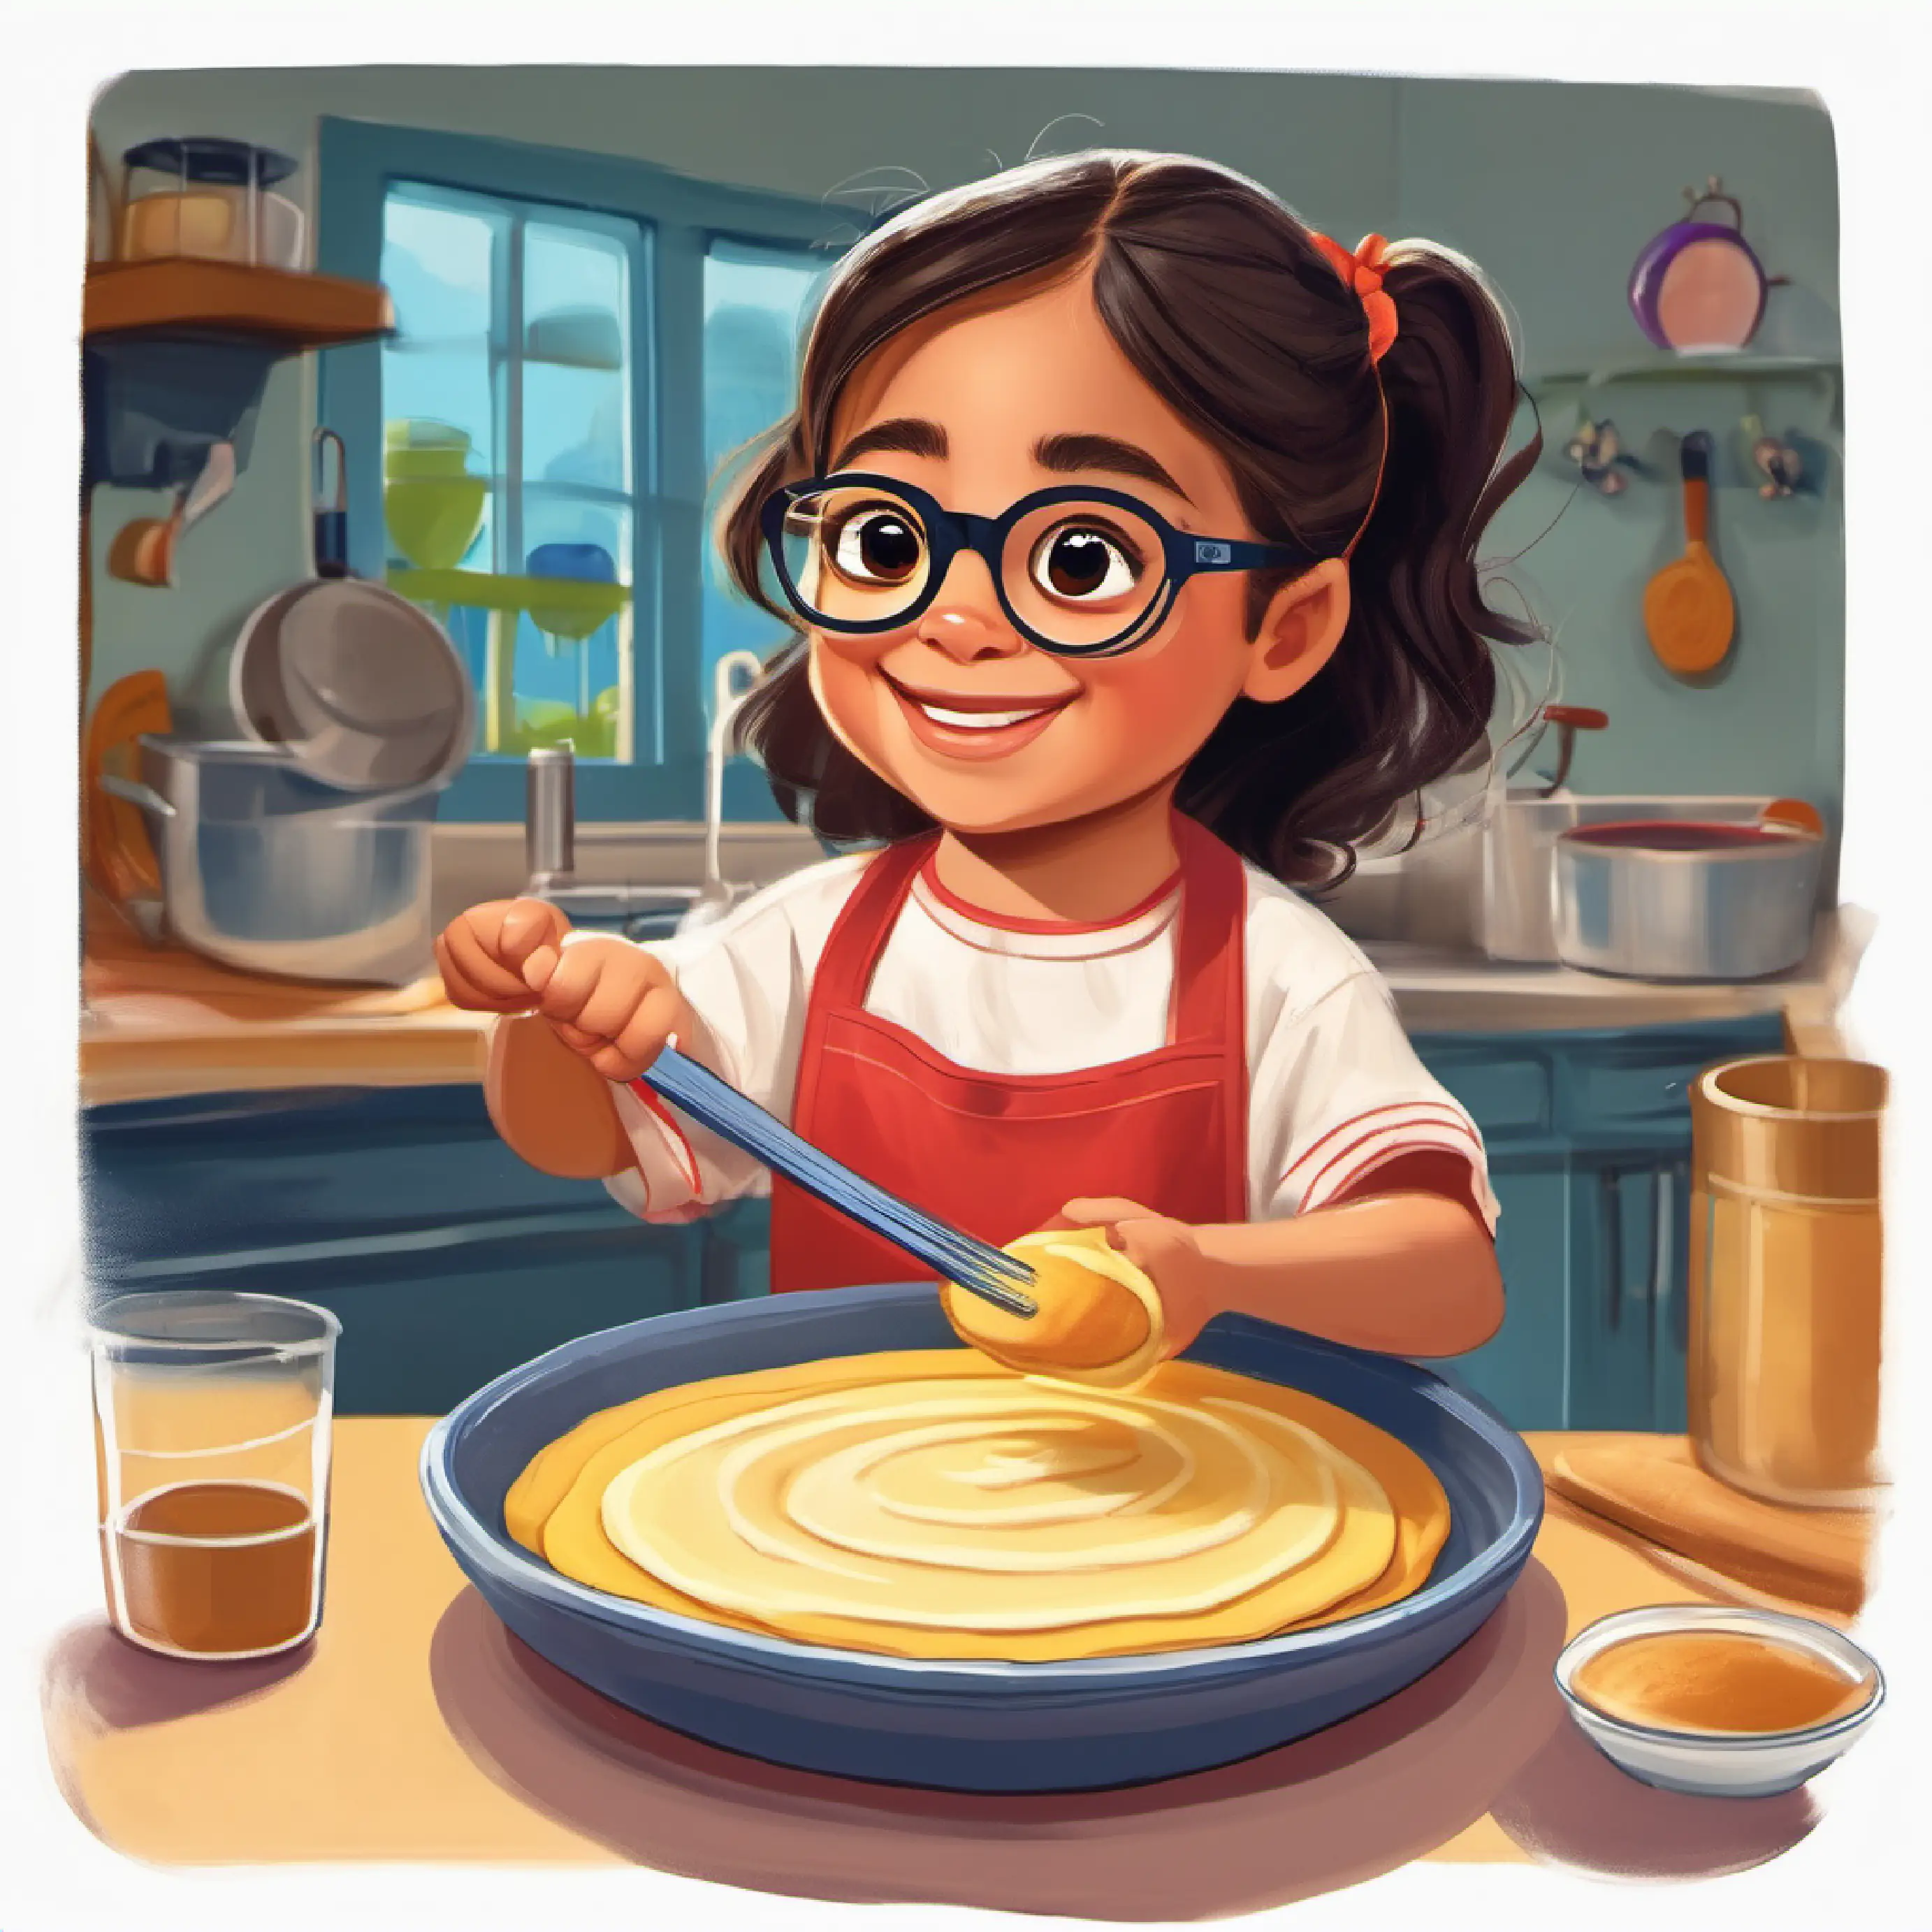 Karen is mixing pancake batter in a bowl.